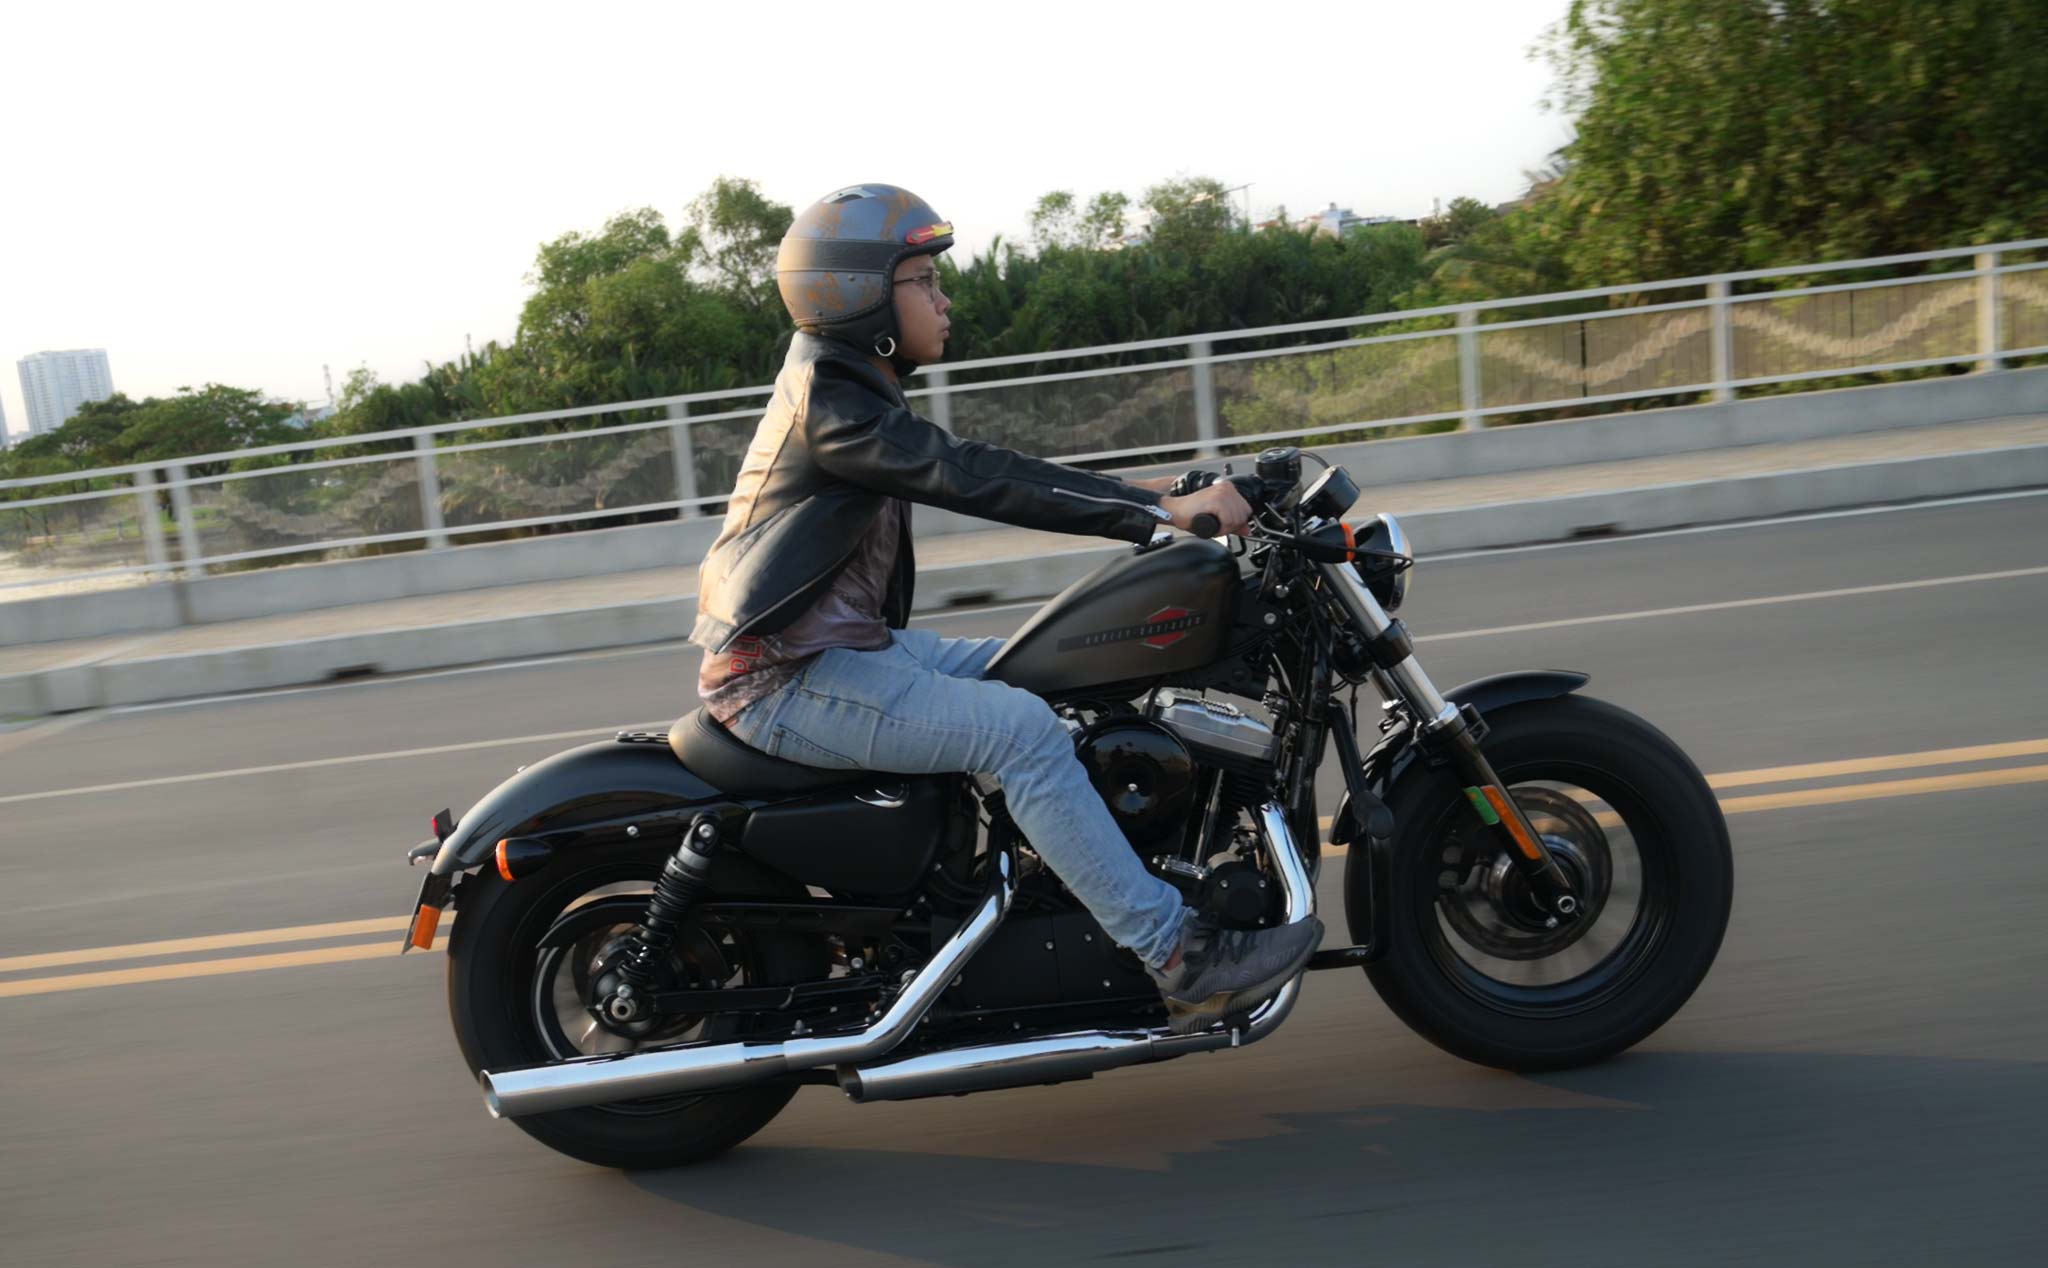 Trên tay Harley-Davidson Forty-Eight - giá từ 479 triệu, chạy ngầu, phù hợp  đi phố | Viết bởi su béo béo